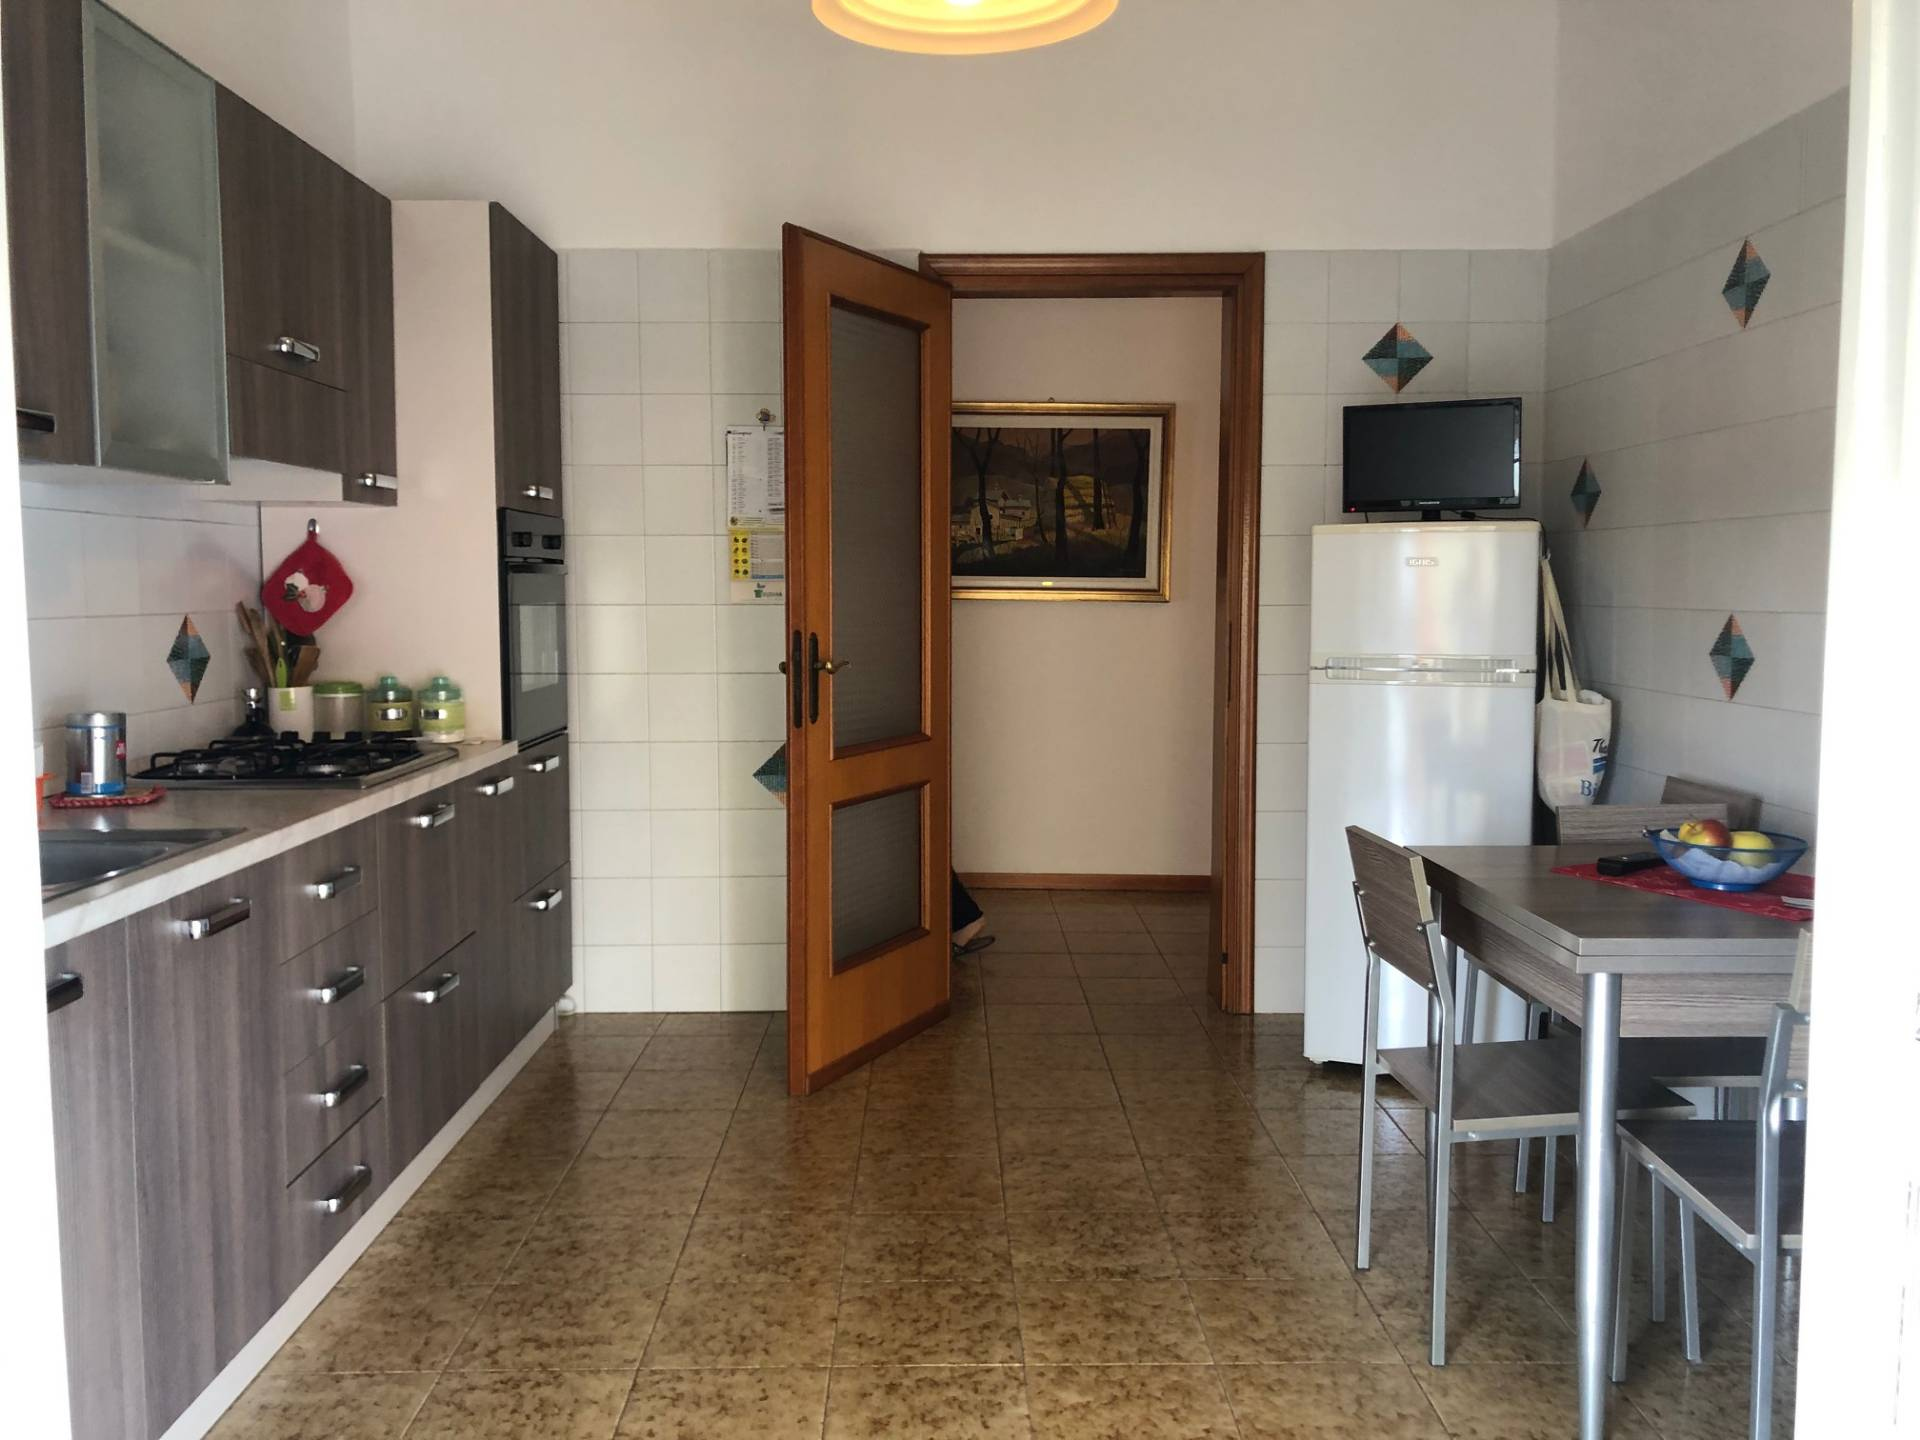 Appartamento in affitto a Oleggio, 2 locali, zona Località: vicinanzecentro, prezzo € 400 | CambioCasa.it